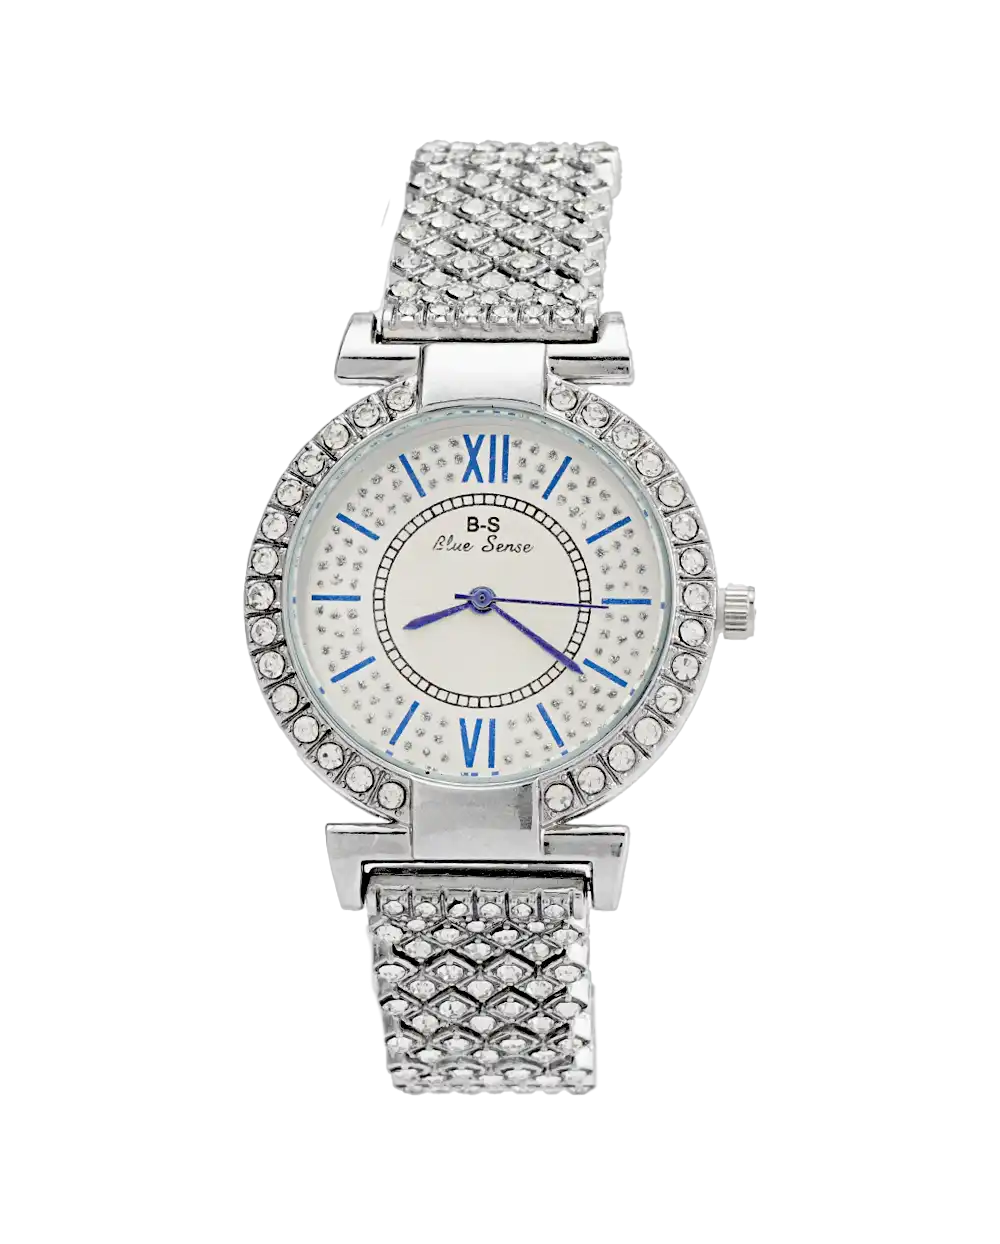 خرید ساعت مچی زنانه فول نگین بلو سنس BLUE SENSE مدل 1761 بهترین قیمت ، ساعت نگینی دخترانه با گارانتی و جعبه ی ساعت و ارسال رایگان